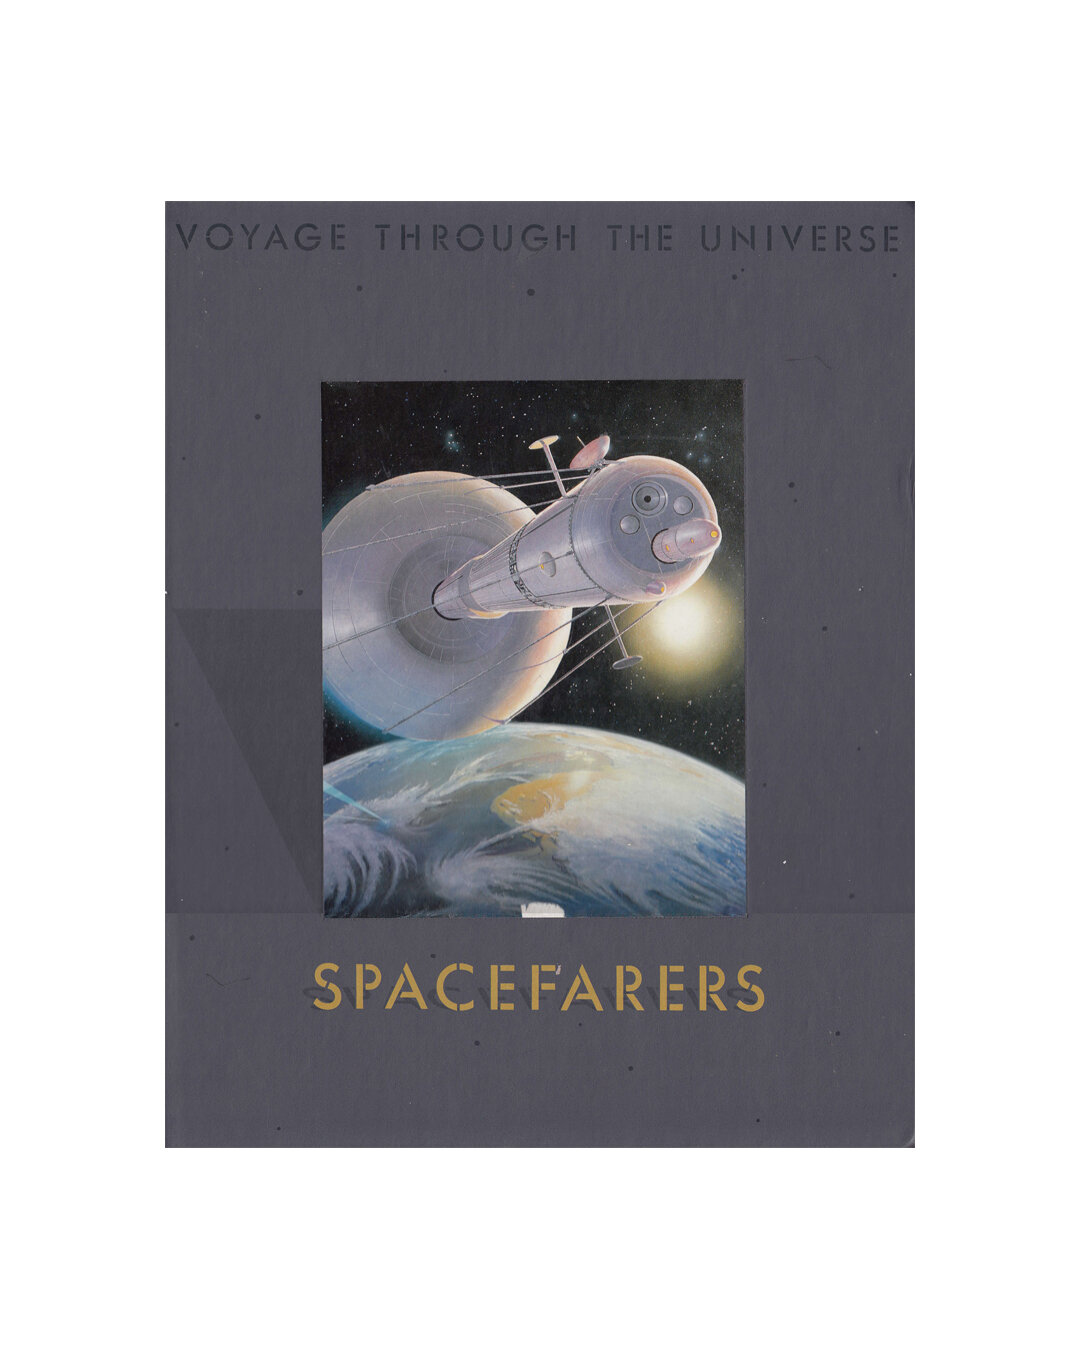 Spacefarers(exlibris).jpg